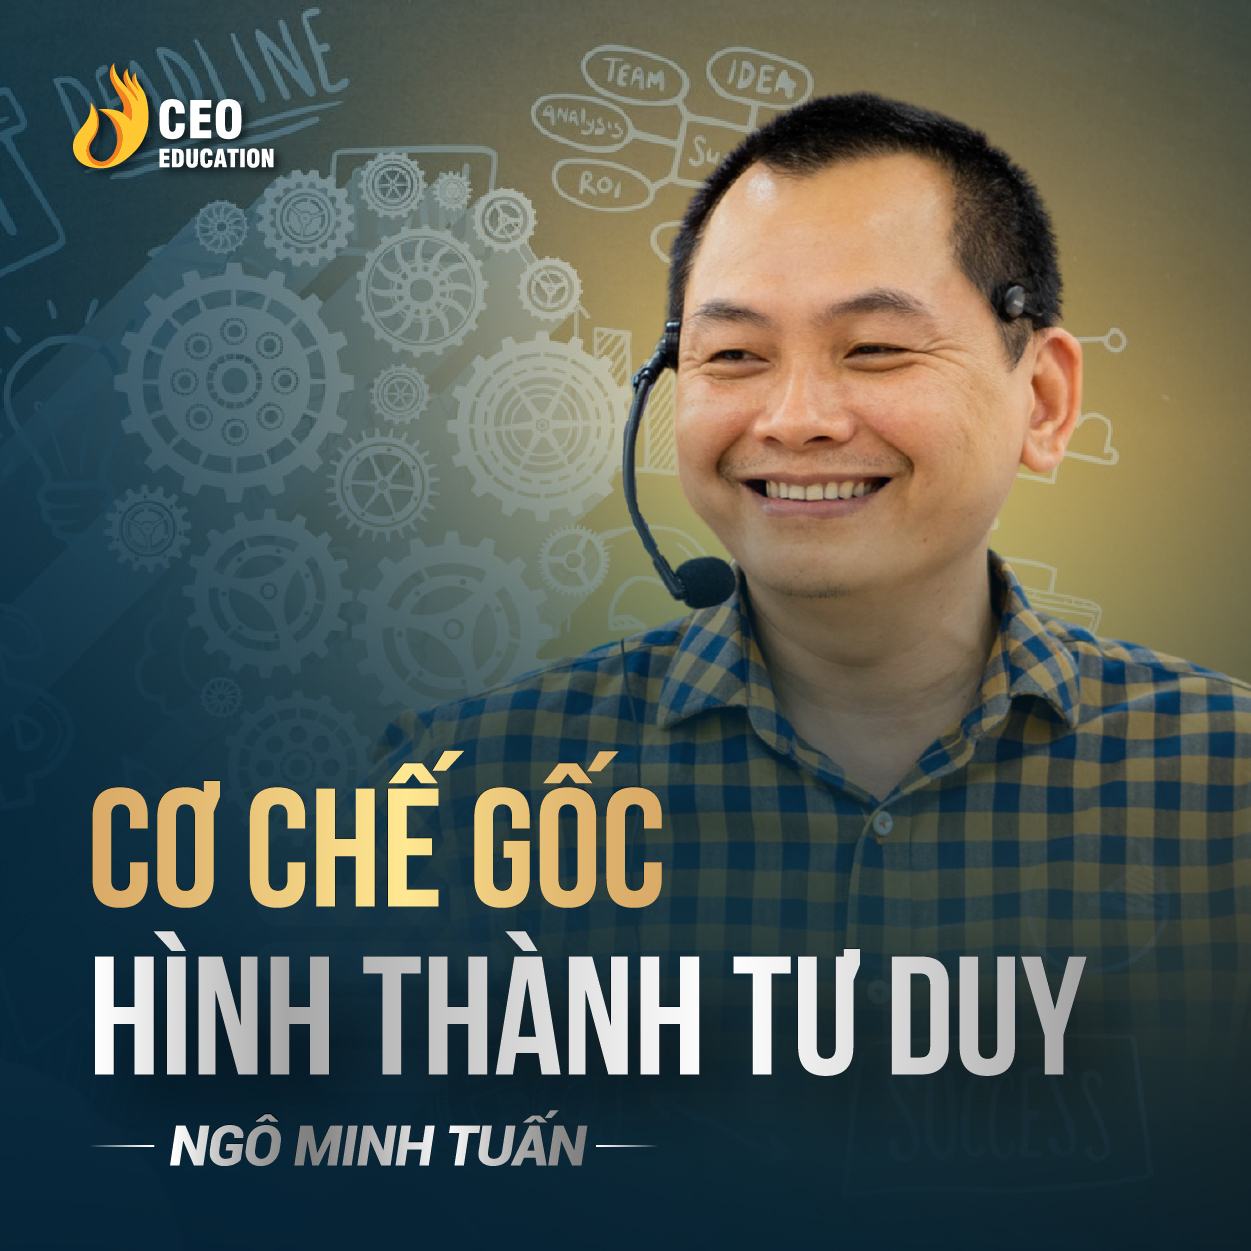 Tư duy gốc rễ, giúp giải quyết mọi vấn đề | Ngô Minh Tuấn | Học Viện CEO Việt Nam